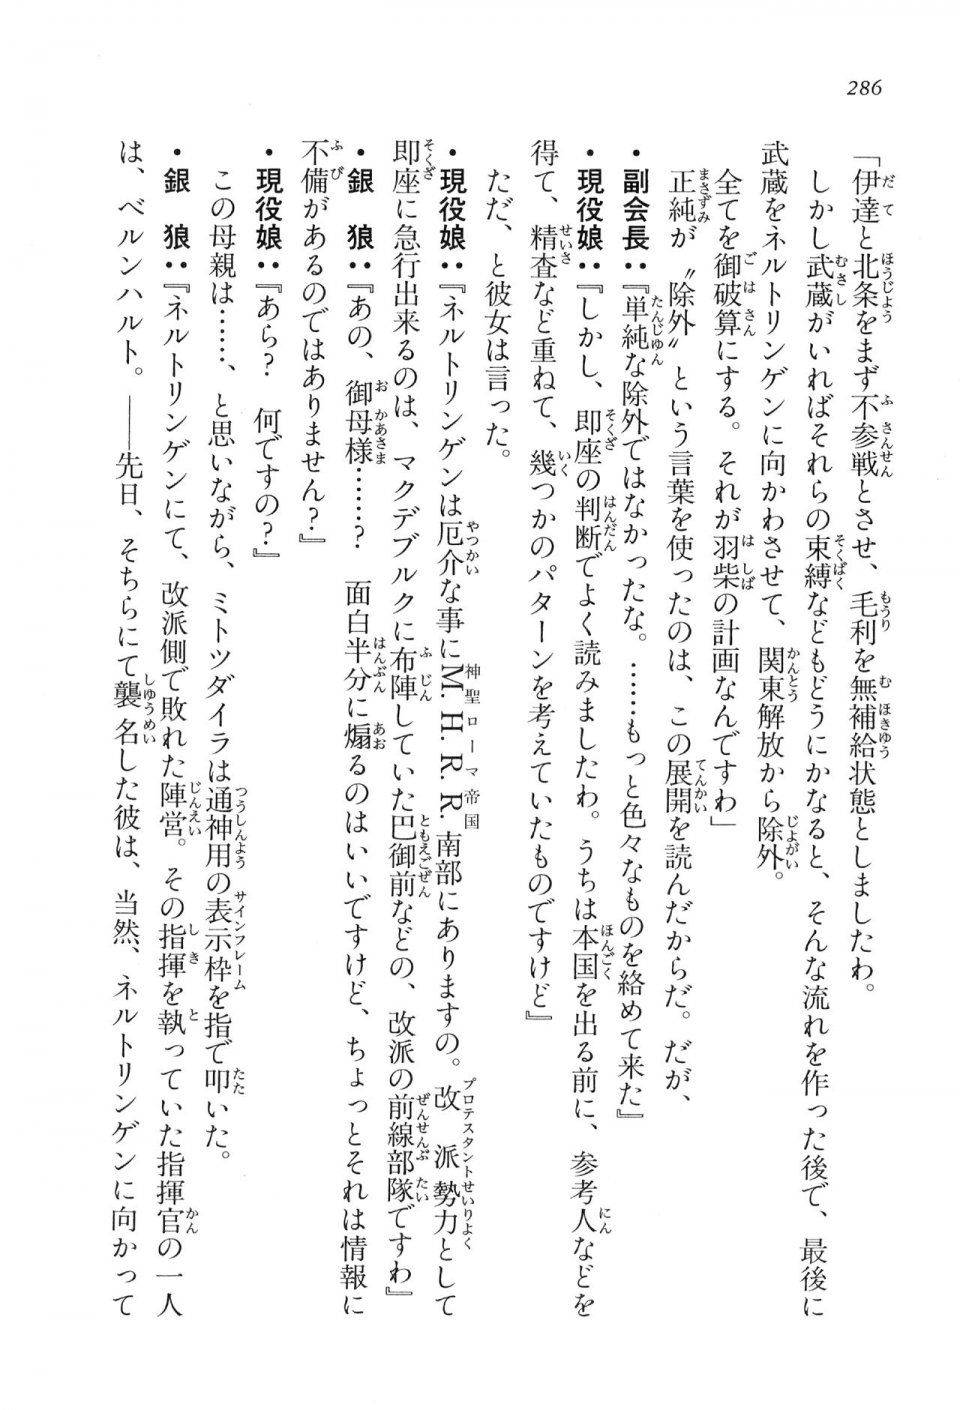 Kyoukai Senjou no Horizon LN Vol 16(7A) - Photo #286